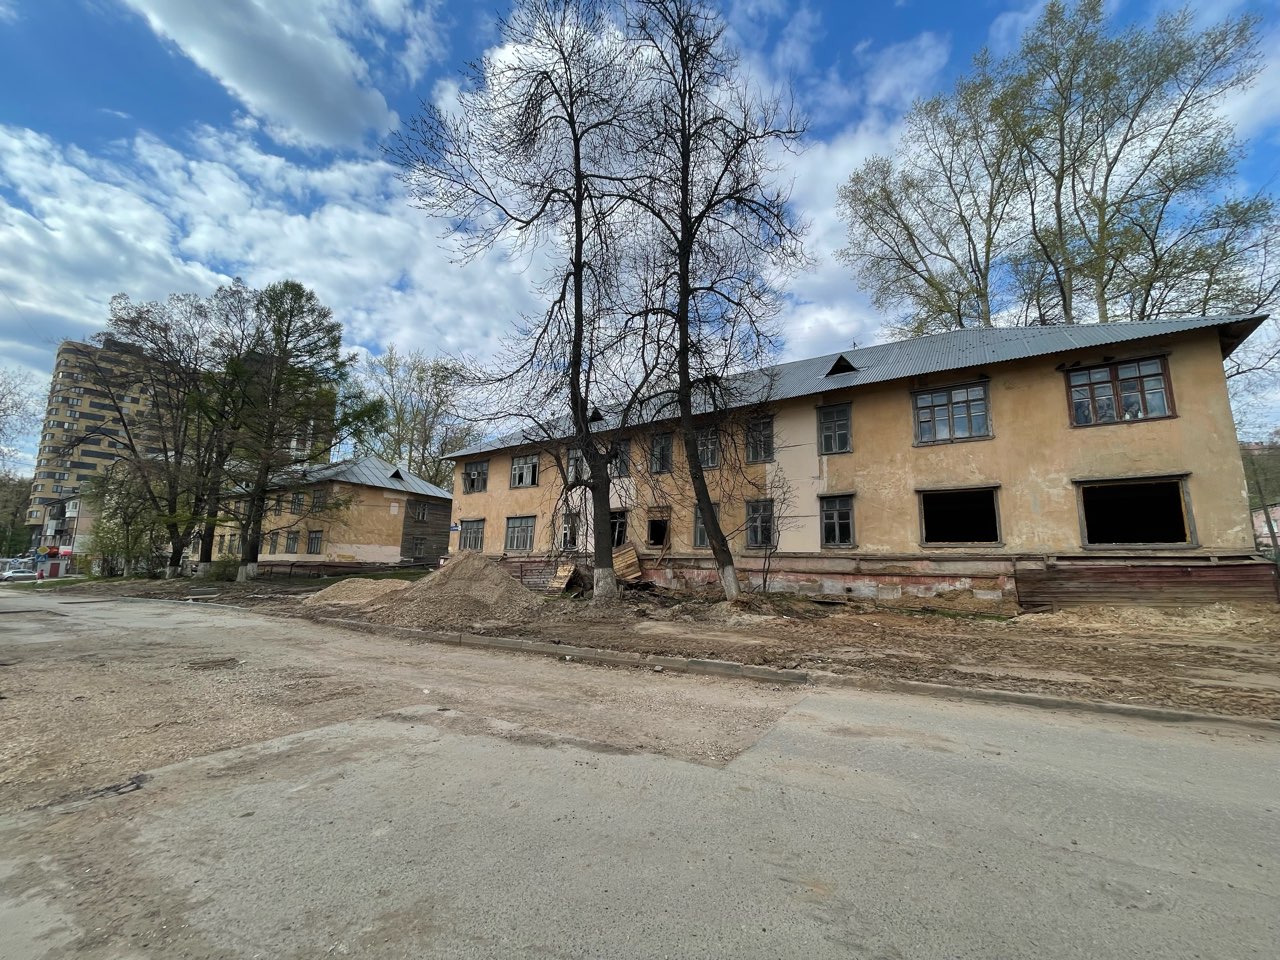 Расселенный дом на улице Батумской в Нижнем Новгороде снесут до конца года  - фото 1